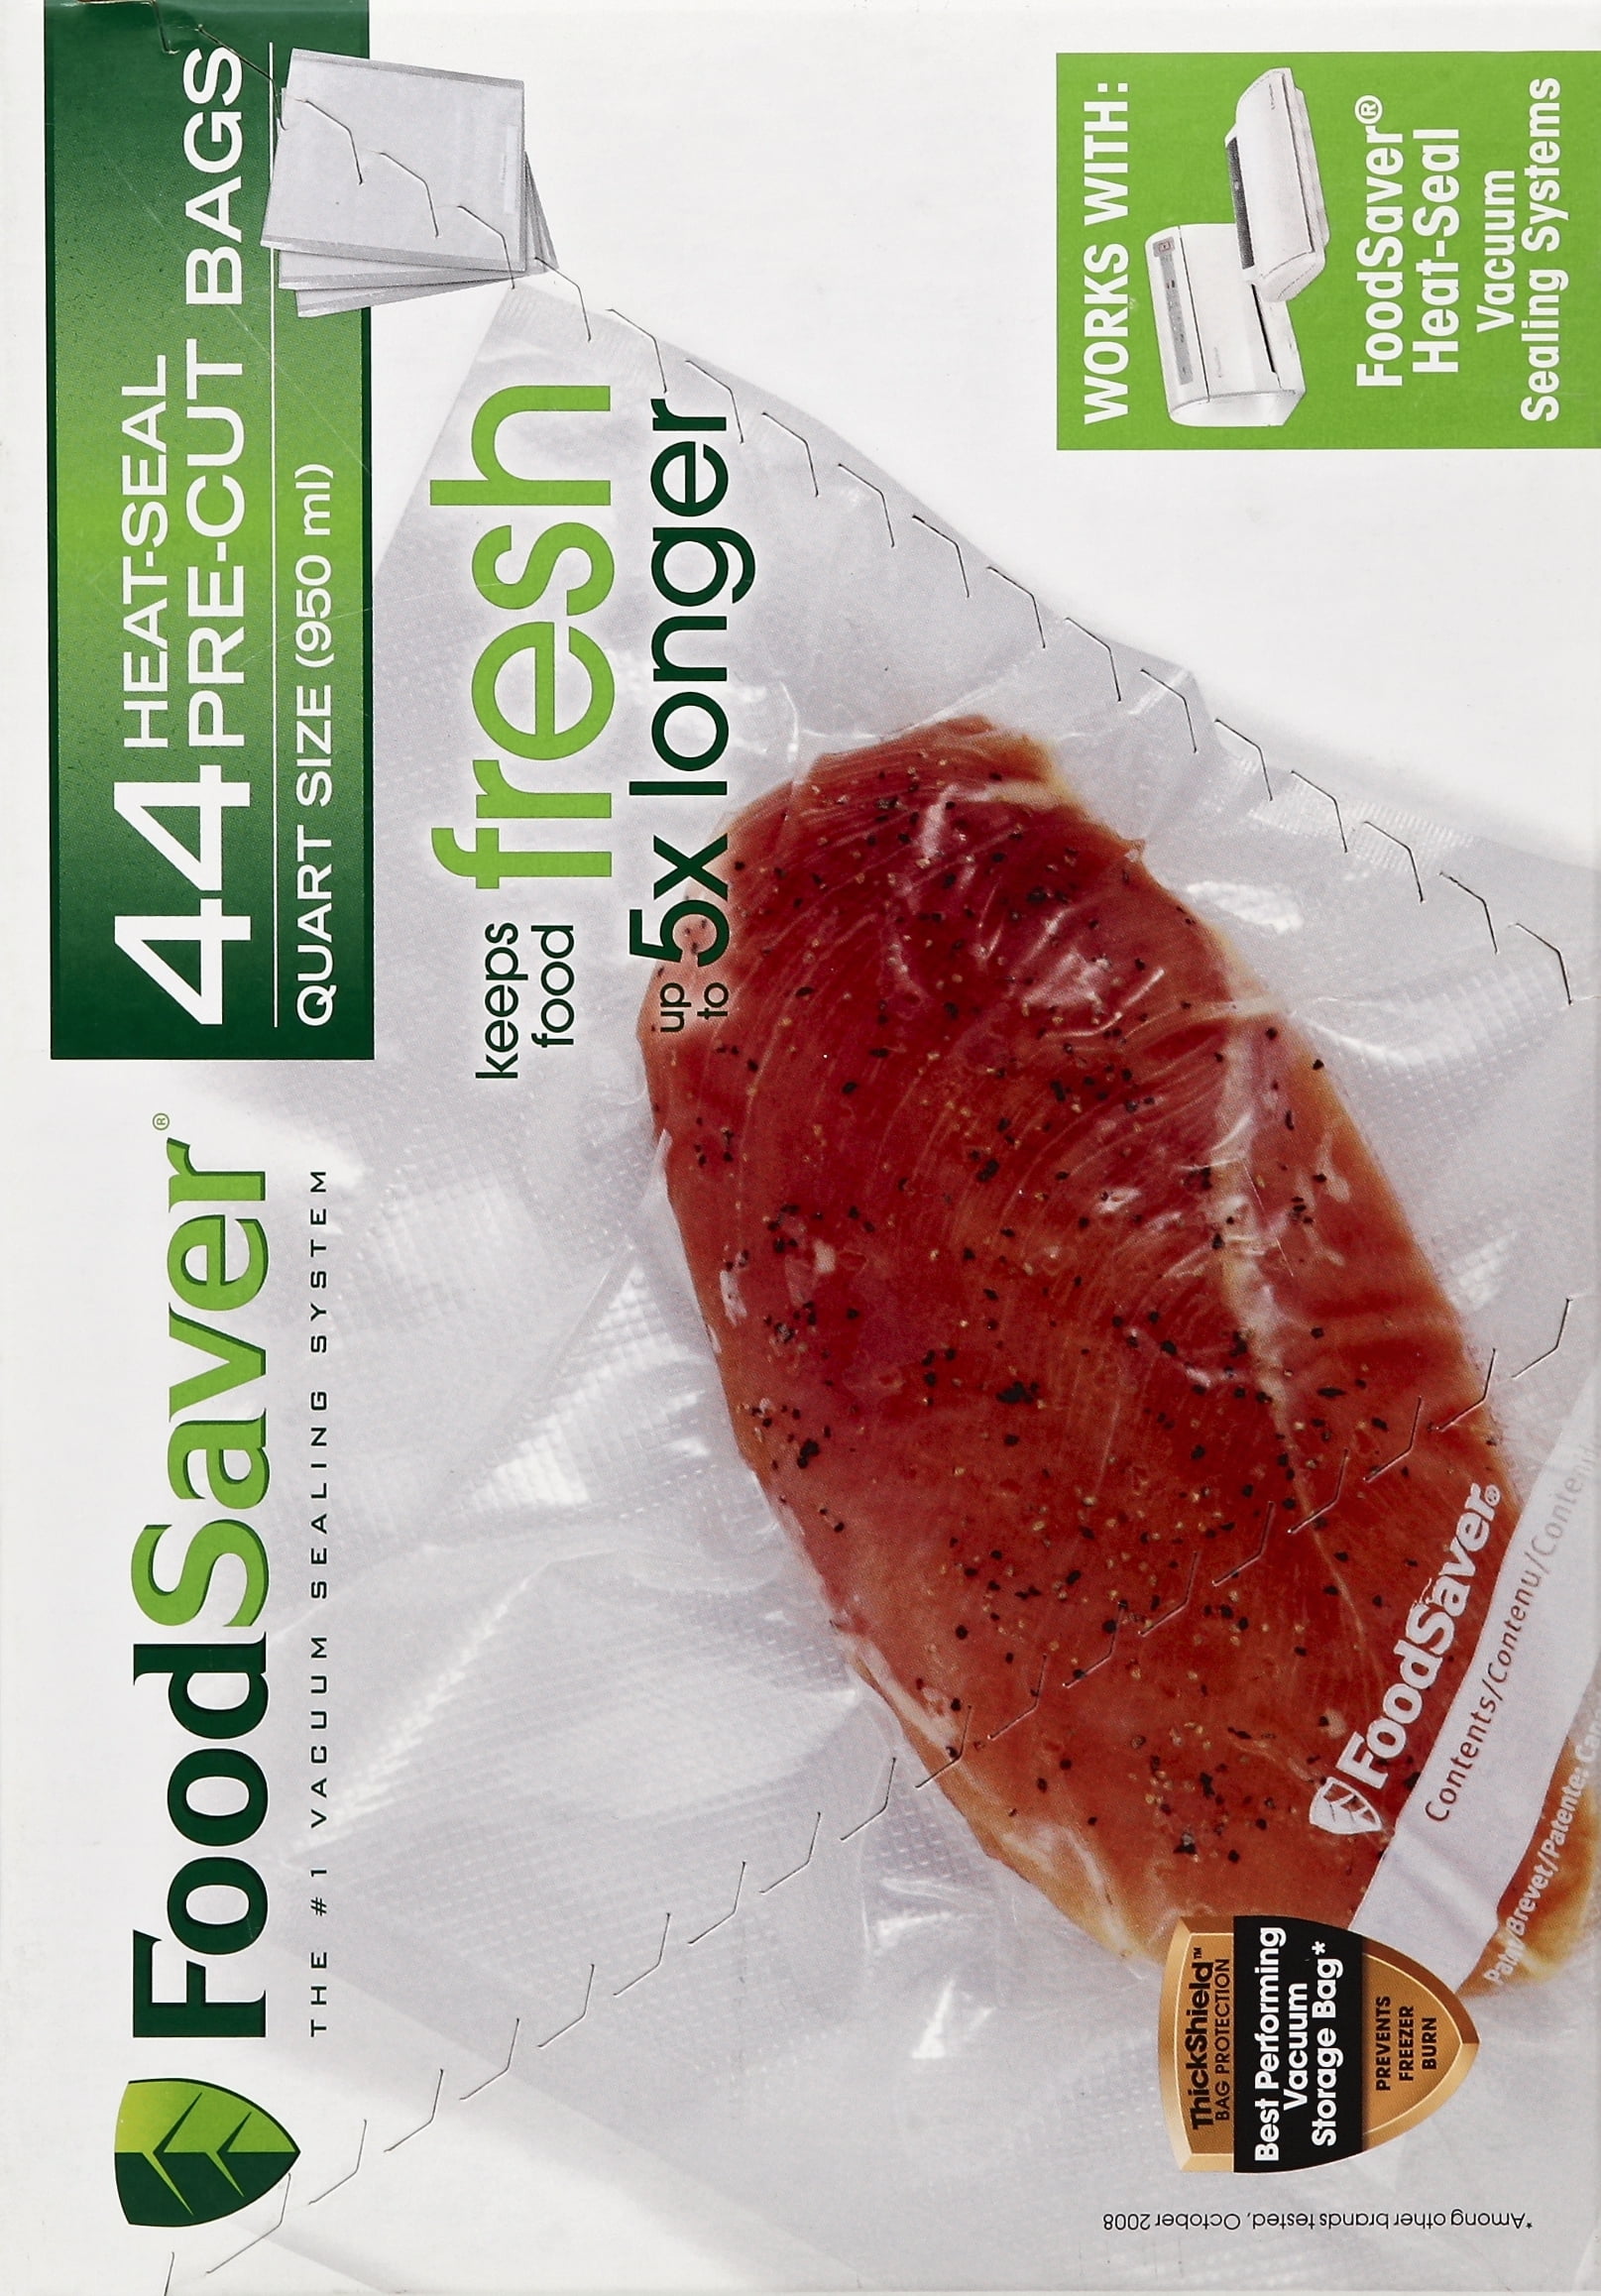 Foodsaver foodsaver vacuum sealer bags for airtight food storage and sous  vide, 1 quart precut bags (44 count)